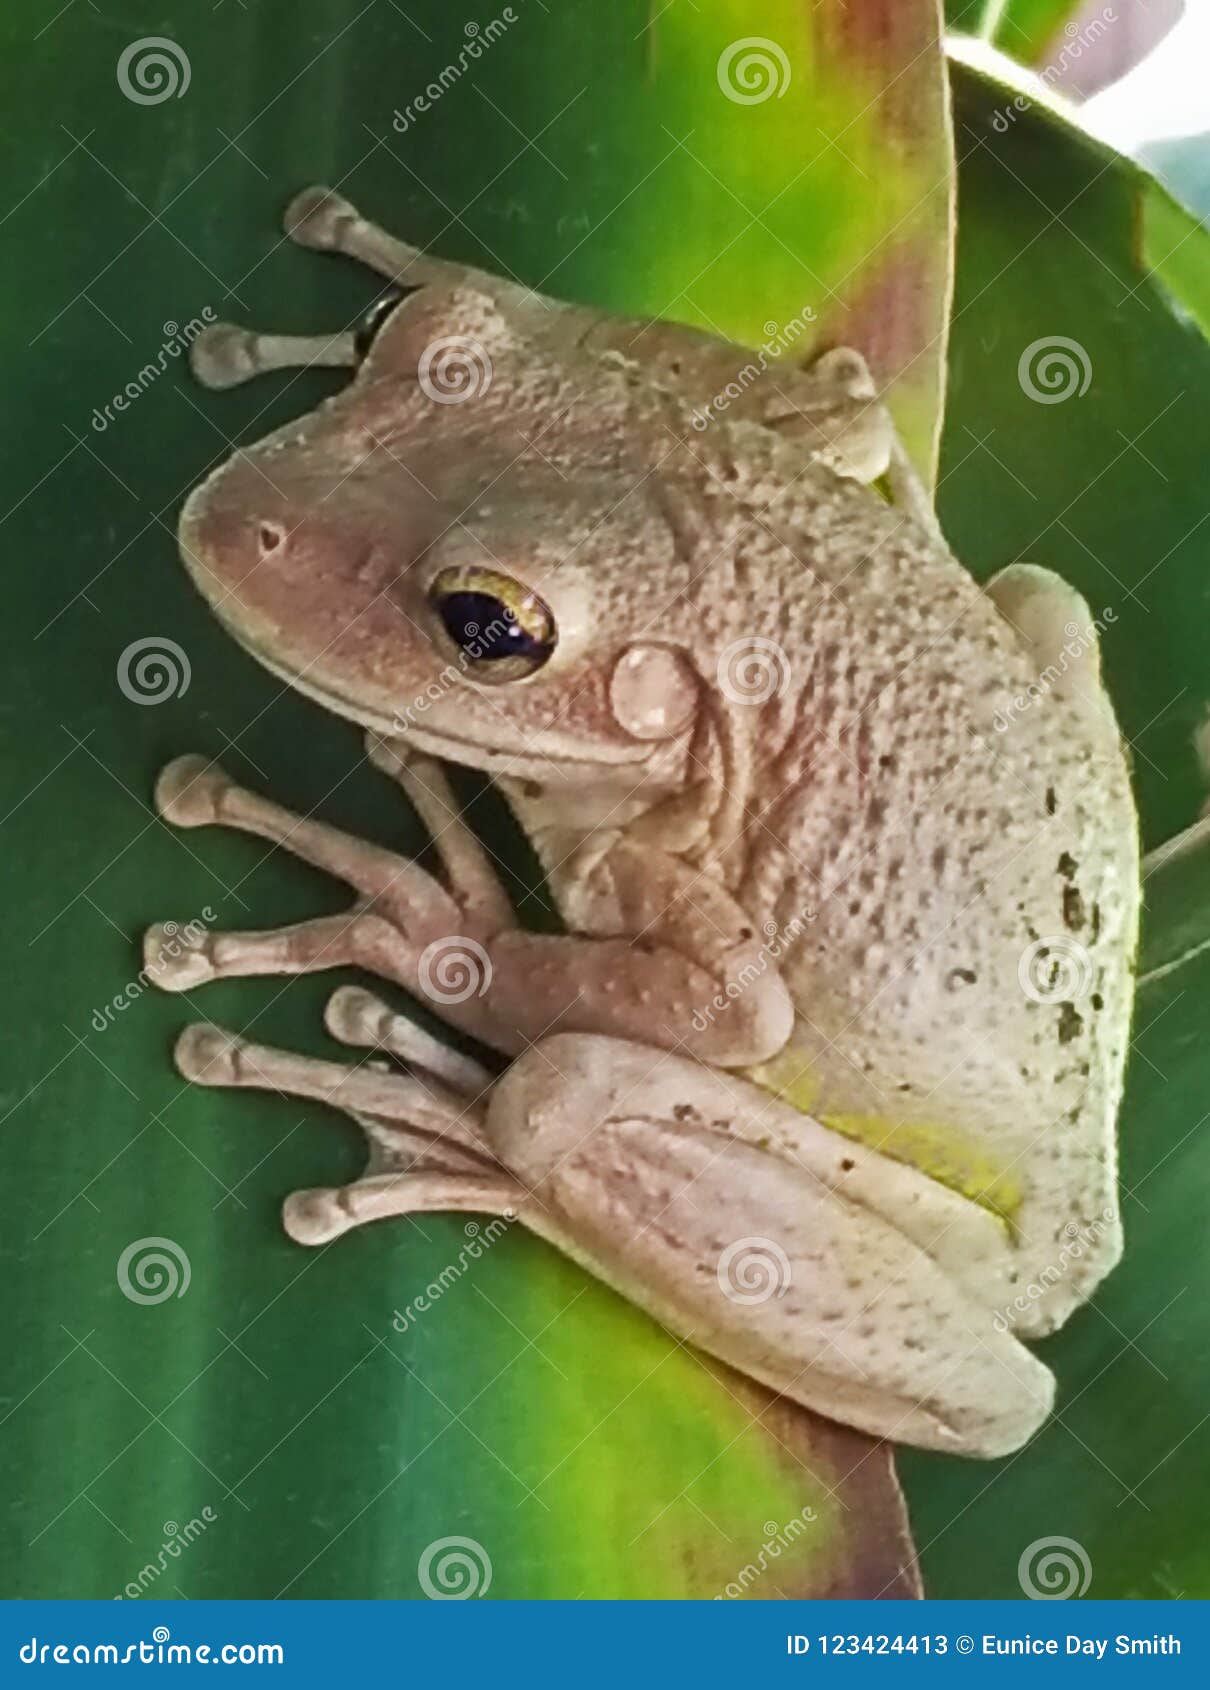 古巴青蛙，热带青蛙母青蛙在叶子的青蛙库存图片. 图片包括有感激的, 女性, 绿色, 叶子, 古巴人- 123424413